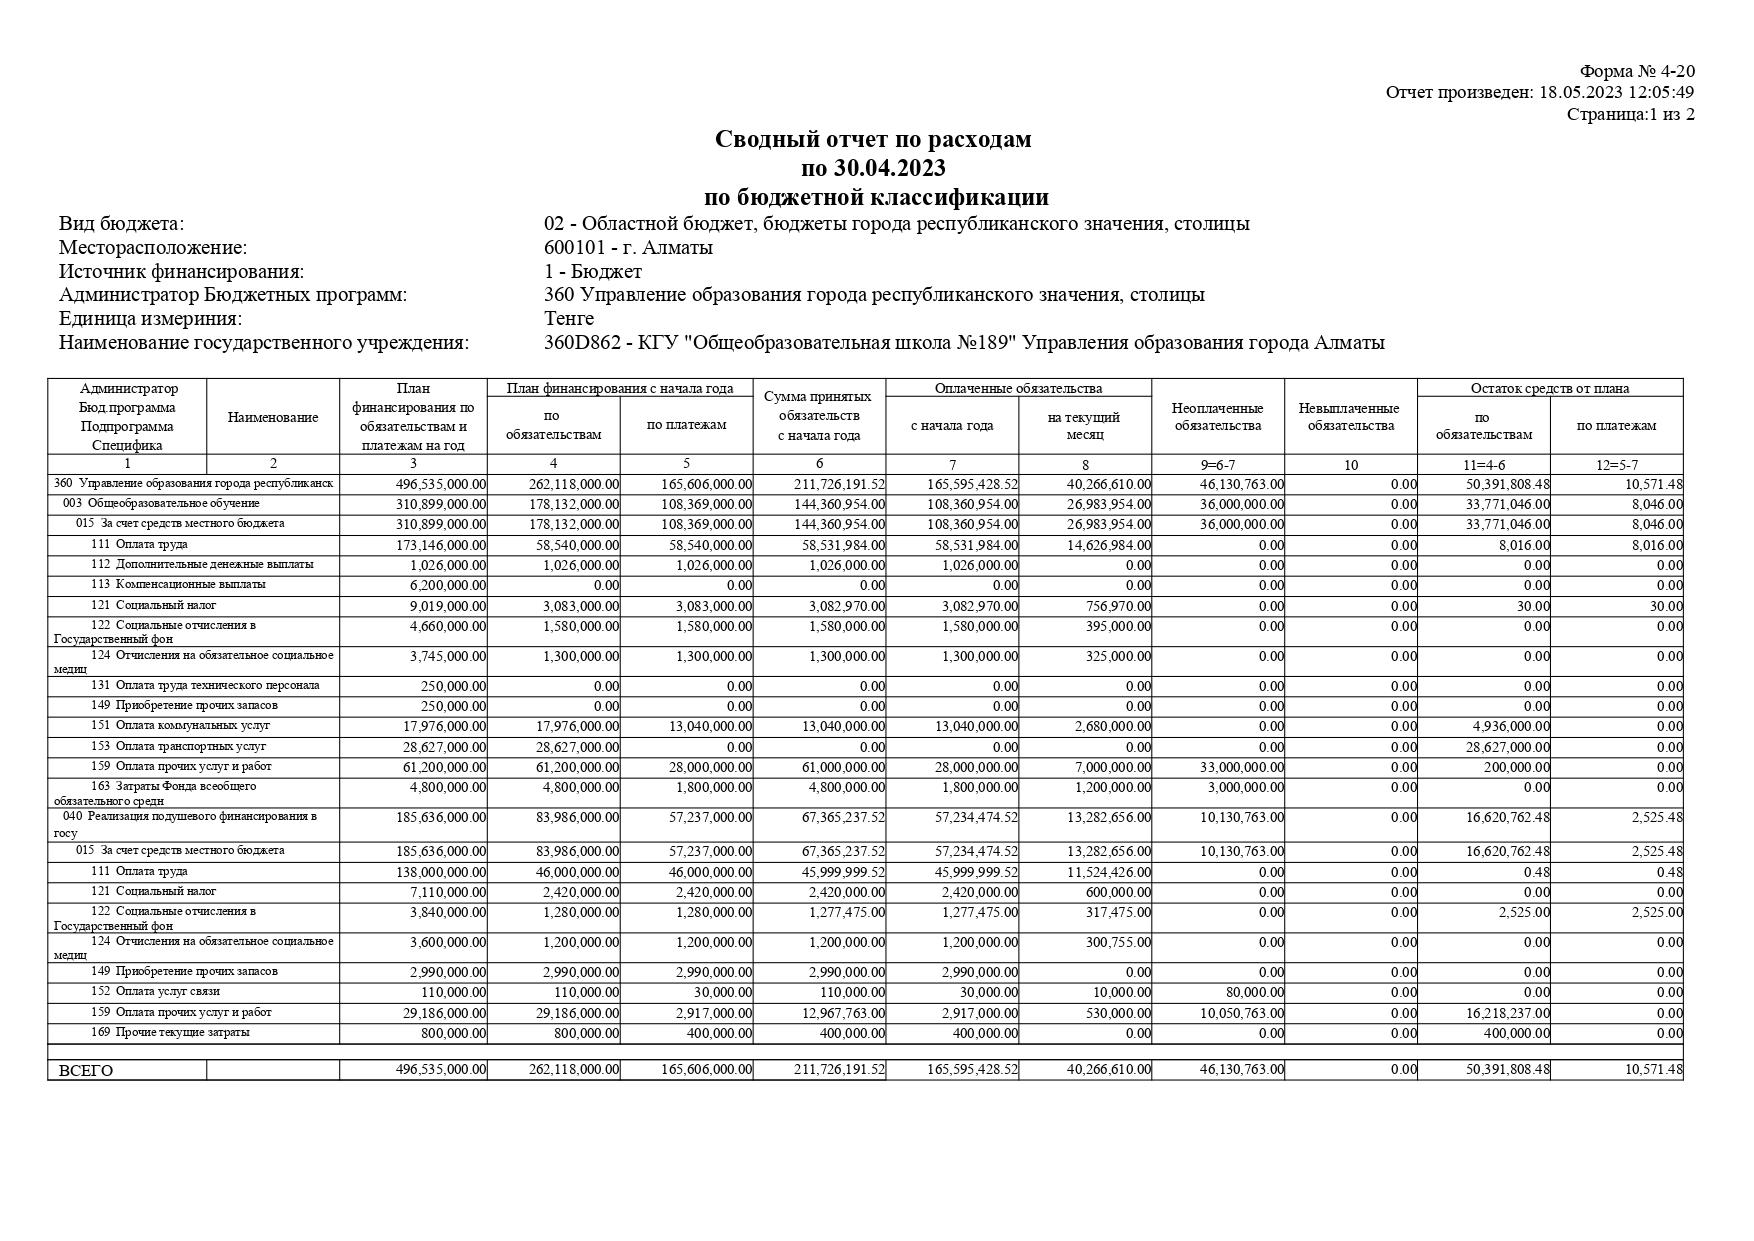 Сводный отчет по расходам по 31.03.2022